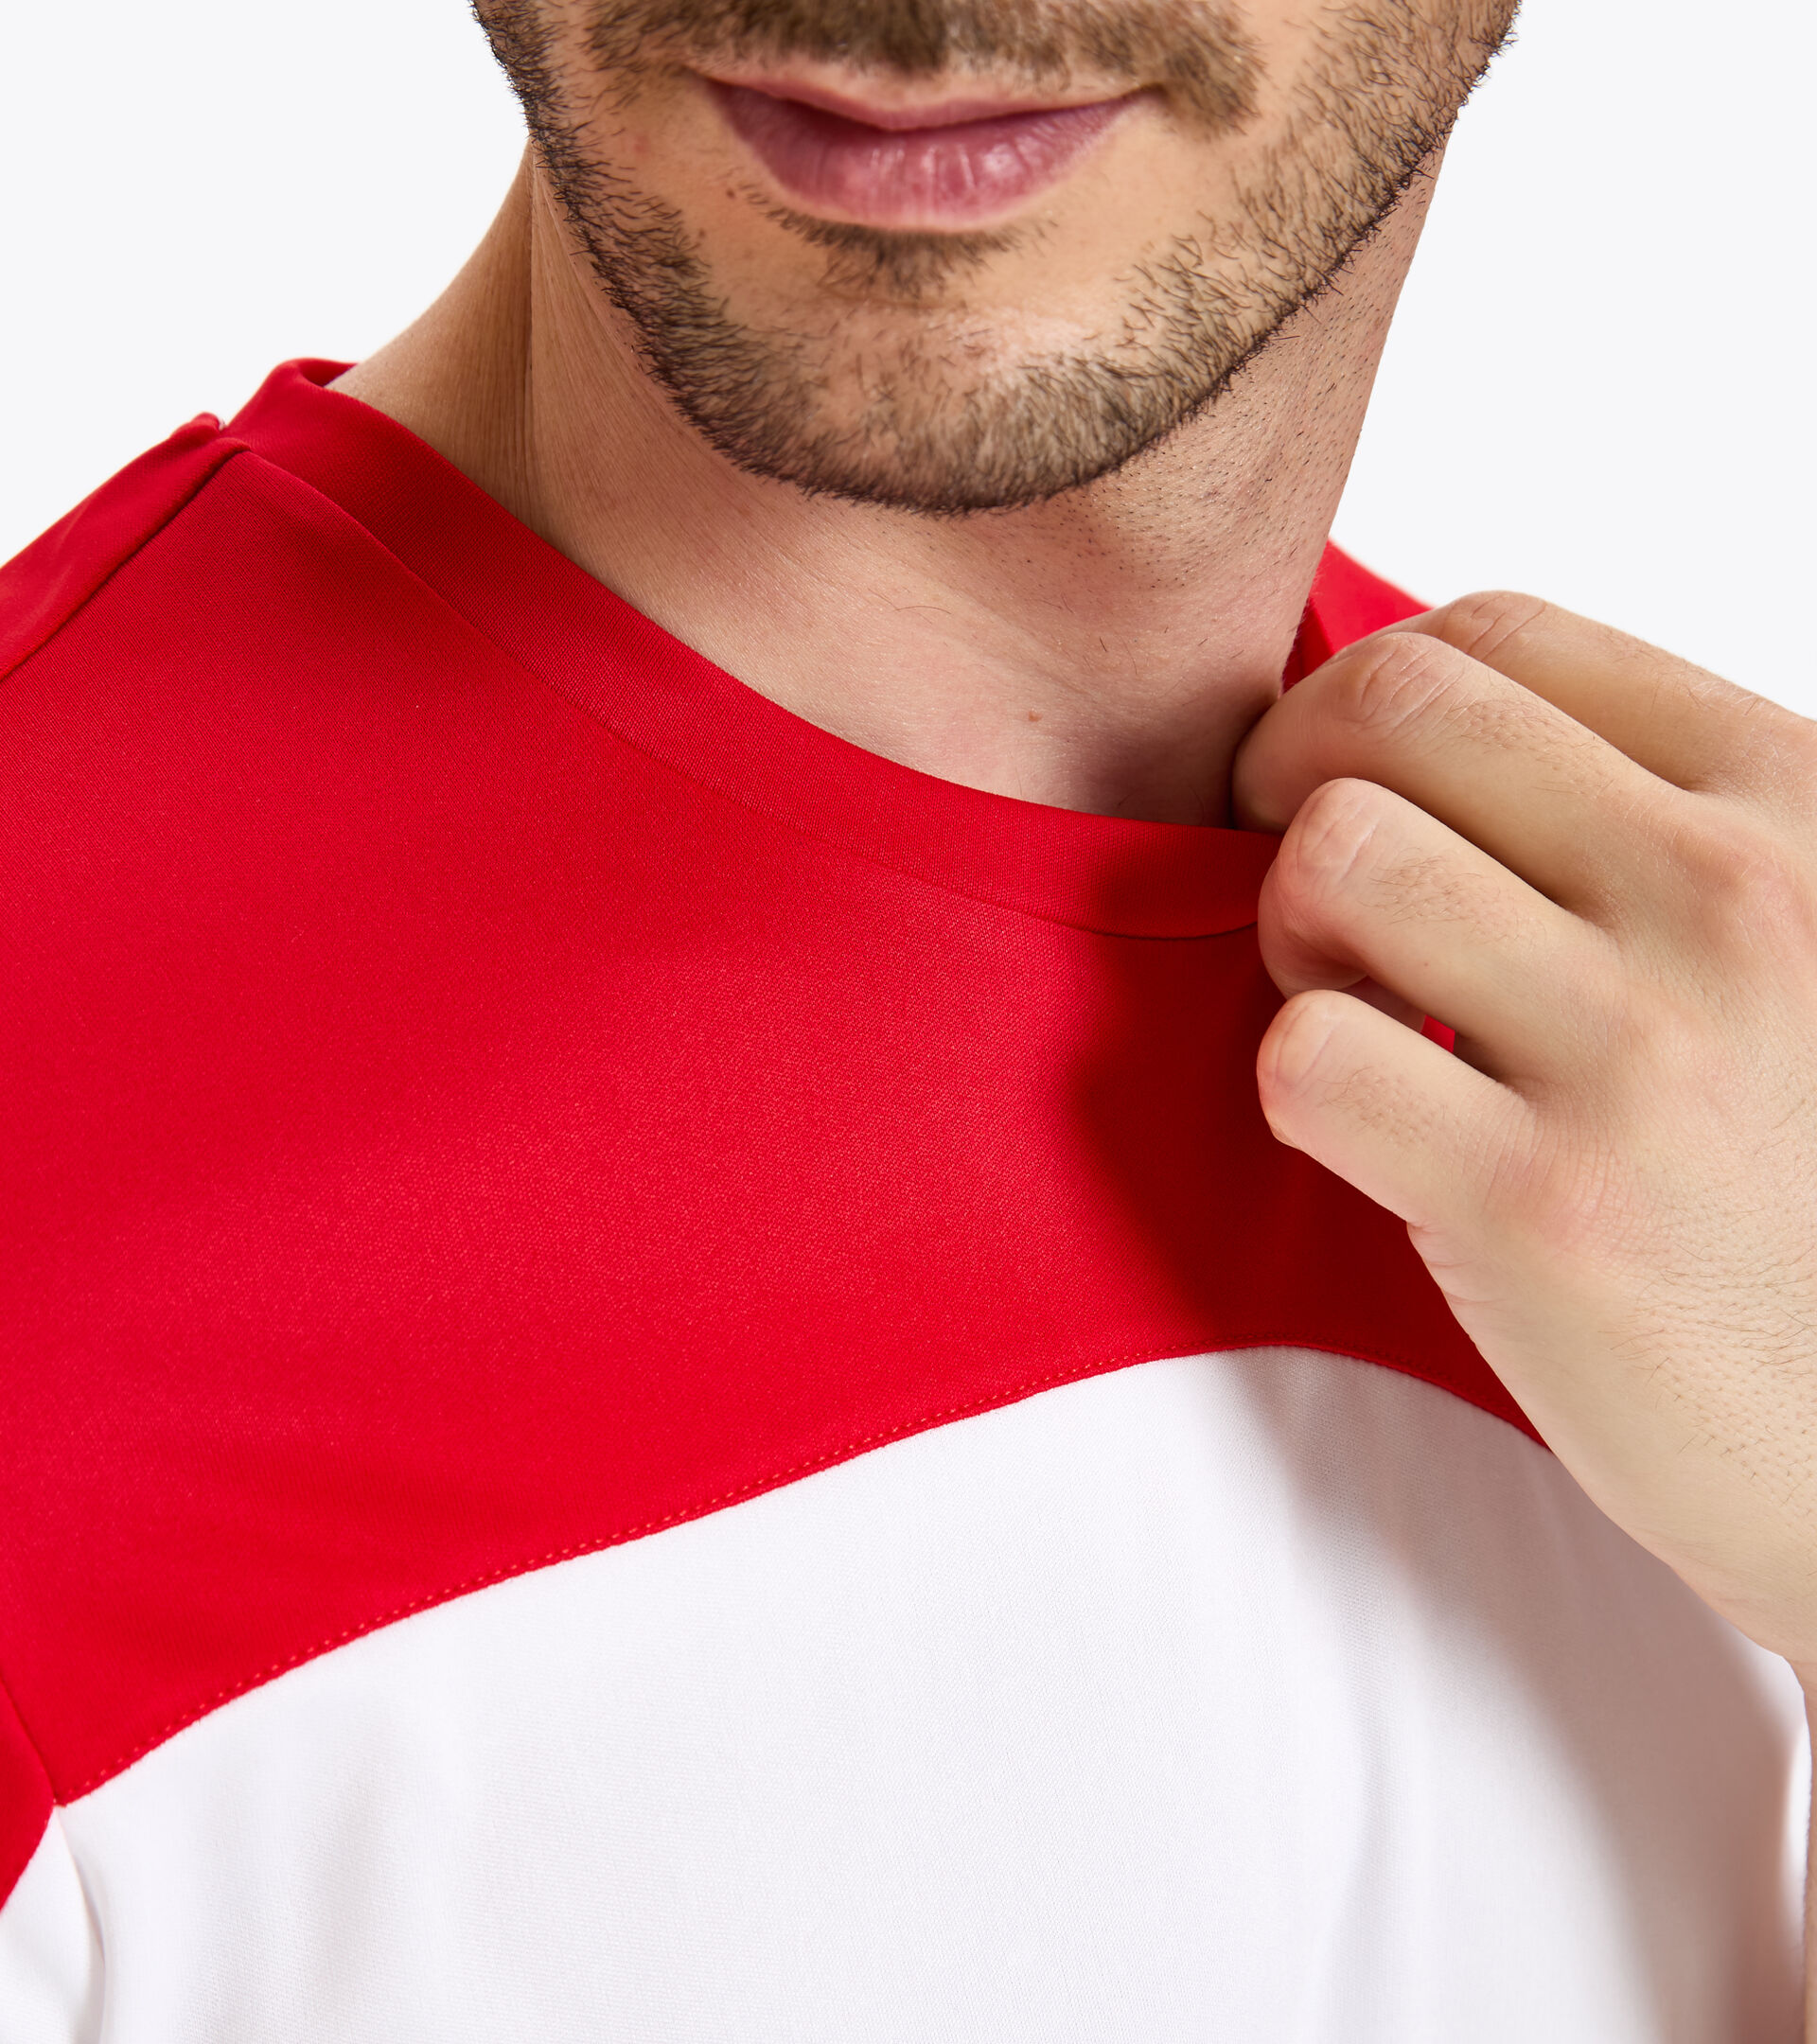 T-shirt de tennis - Homme T-SHIRT TEAM ROUGE TOMATE - Diadora